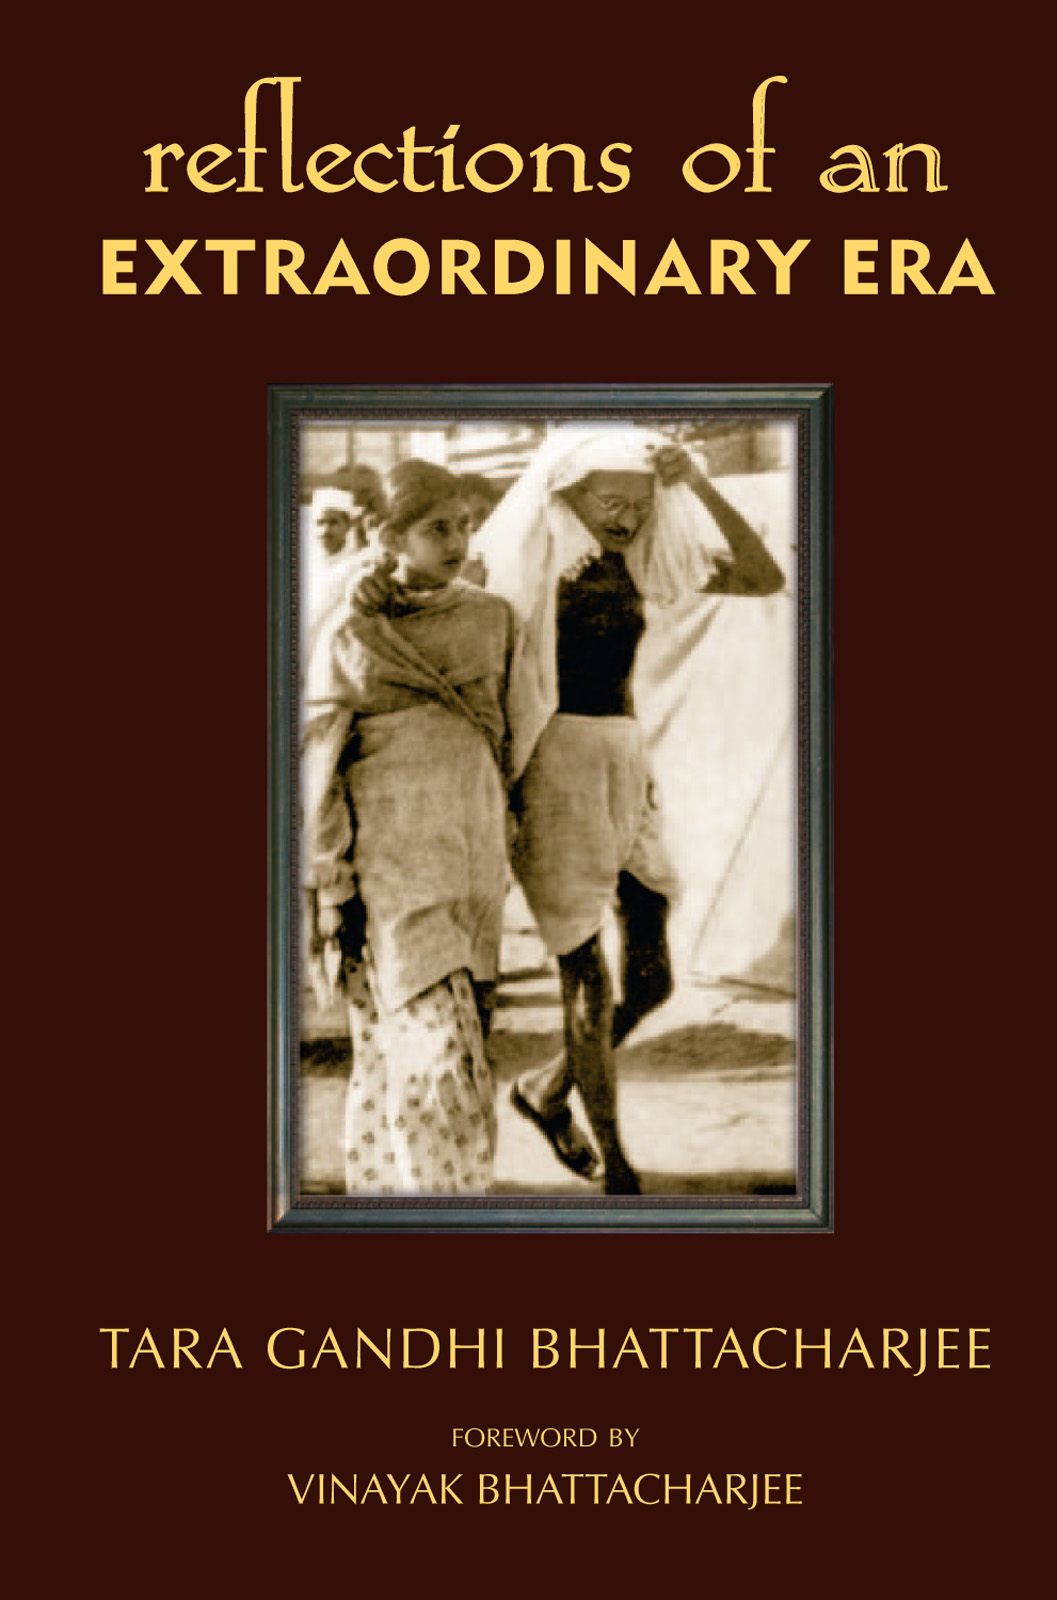 Книга Reflections of an Extraordinary Era из серии , созданная Tara Bhattacharjee, может относится к жанру Биографии и Мемуары. Стоимость электронной книги Reflections of an Extraordinary Era с идентификатором 39811505 составляет 79.72 руб.